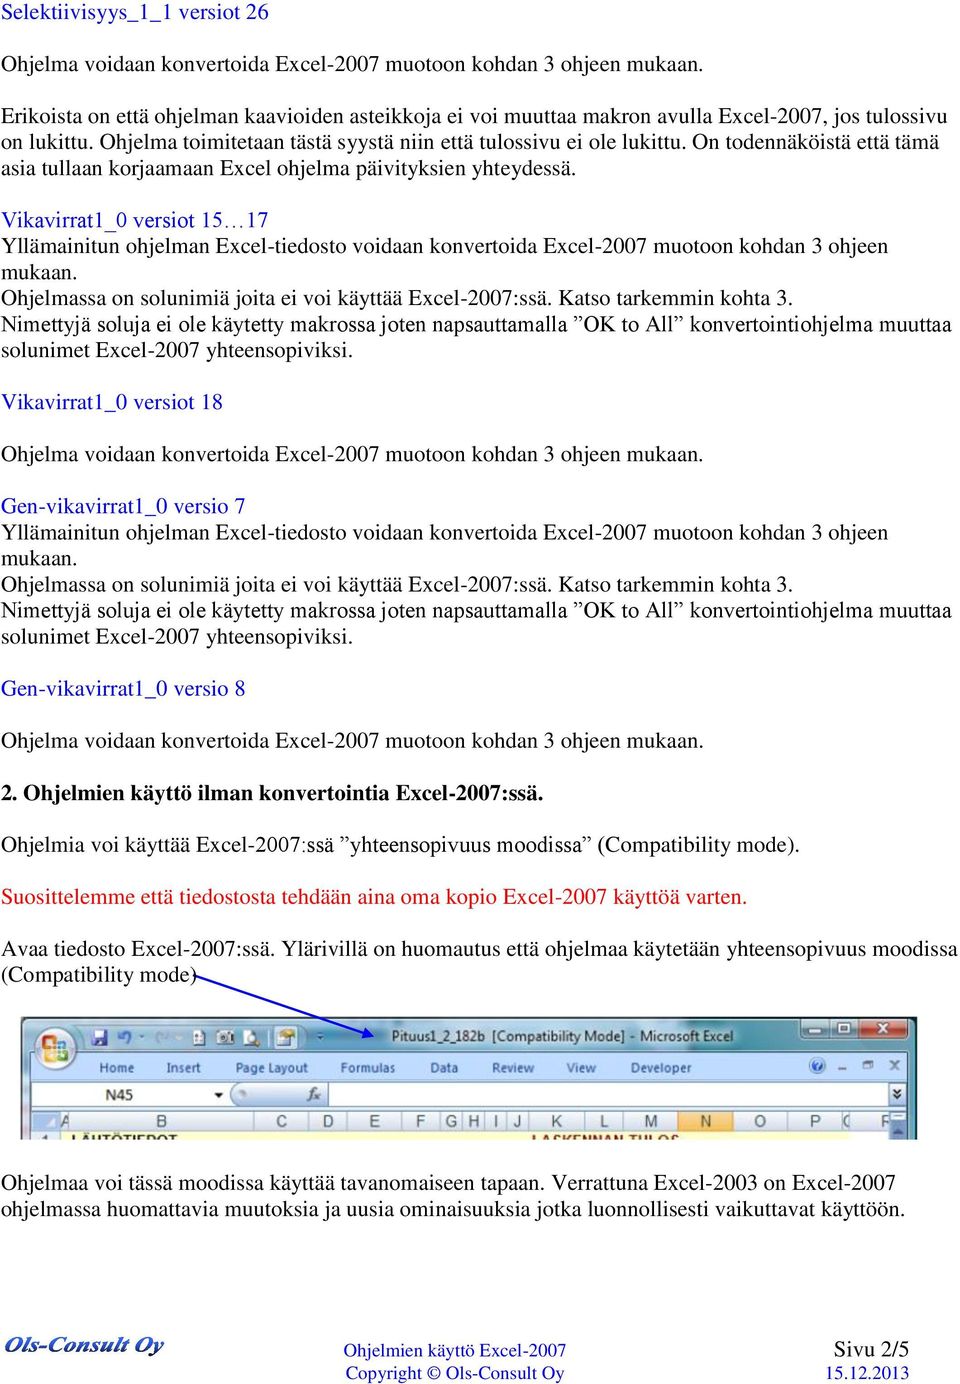 Vikavirrat1_0 versiot 15 17 Ohjelmassa on solunimiä joita ei voi käyttää Excel-2007:ssä. Katso tarkemmin kohta 3.